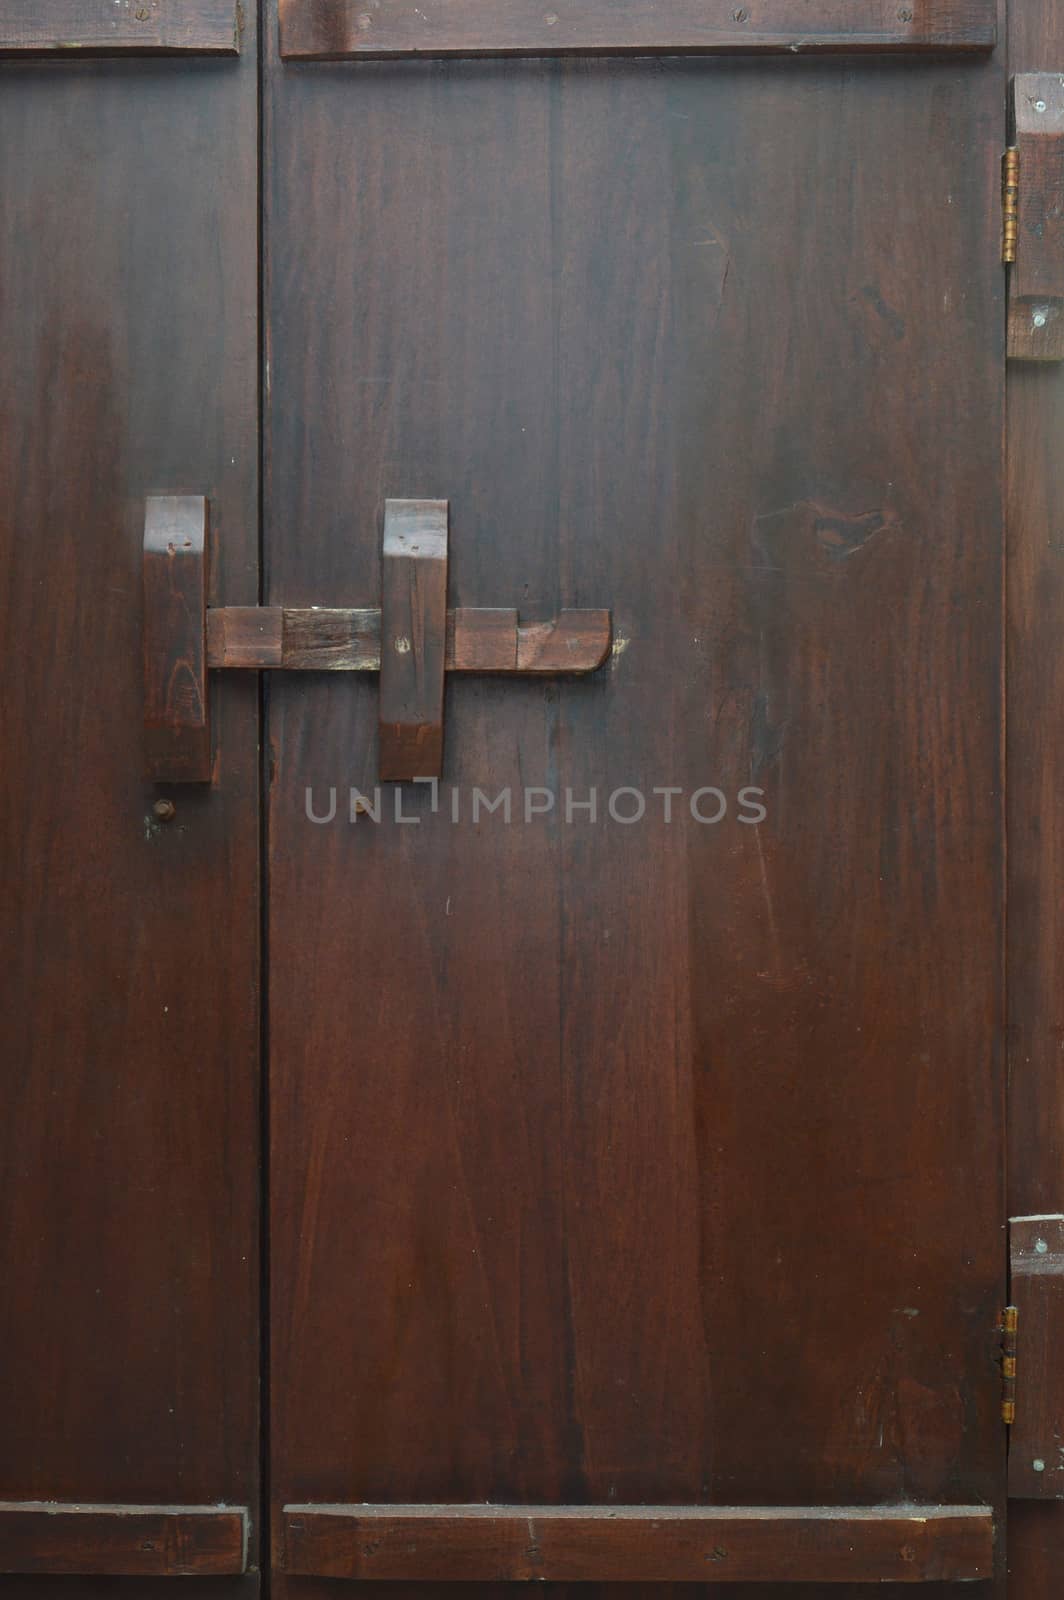 wooden lock bar on the wooden door